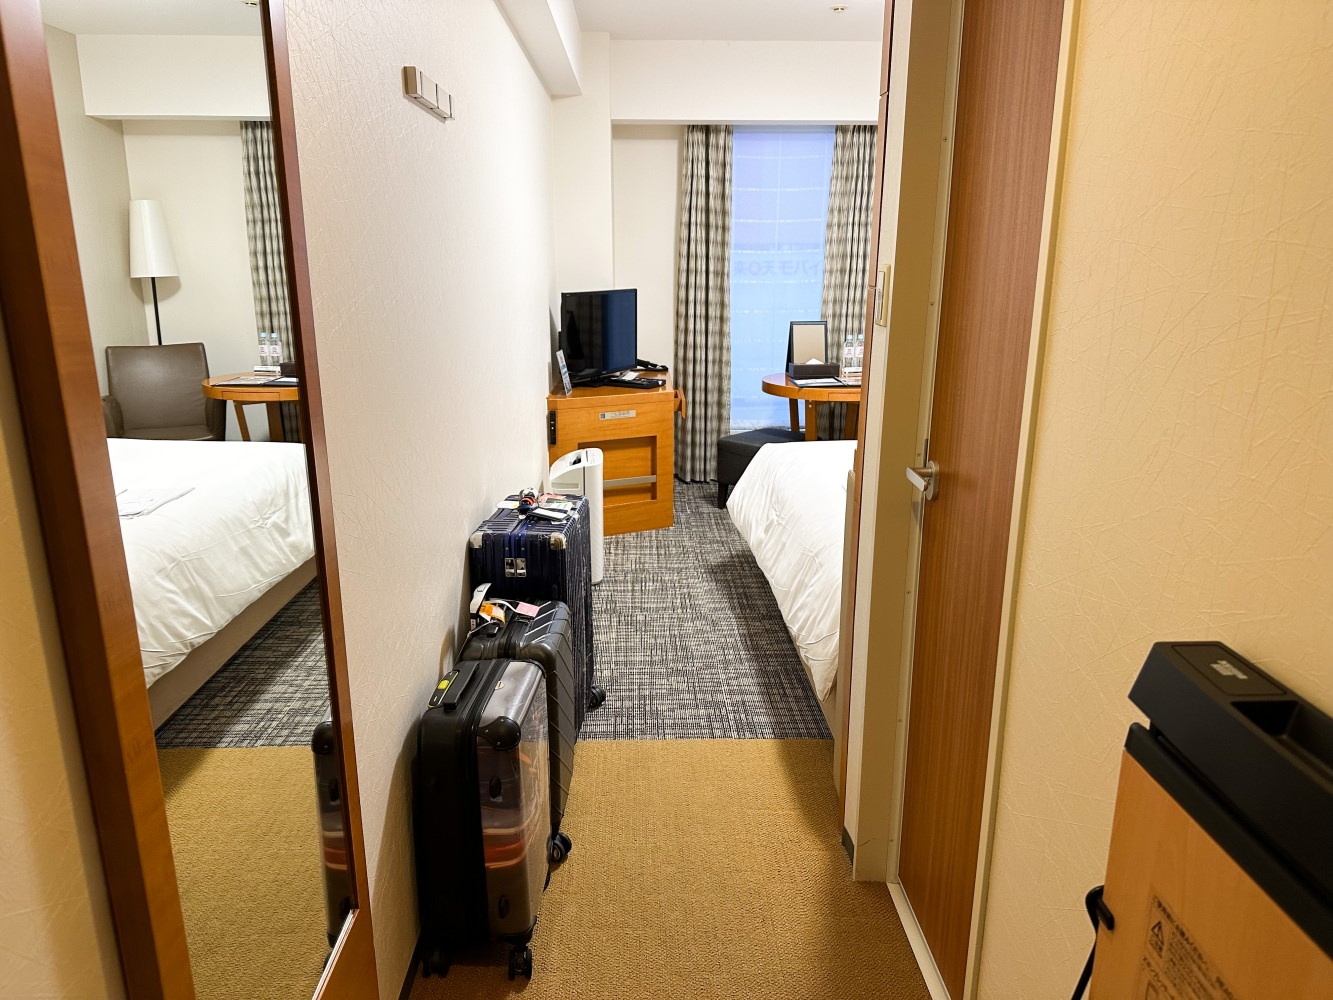 里士滿飯店普利米爾仙台站
Richmond Hotel Premier Sendai Ekimae